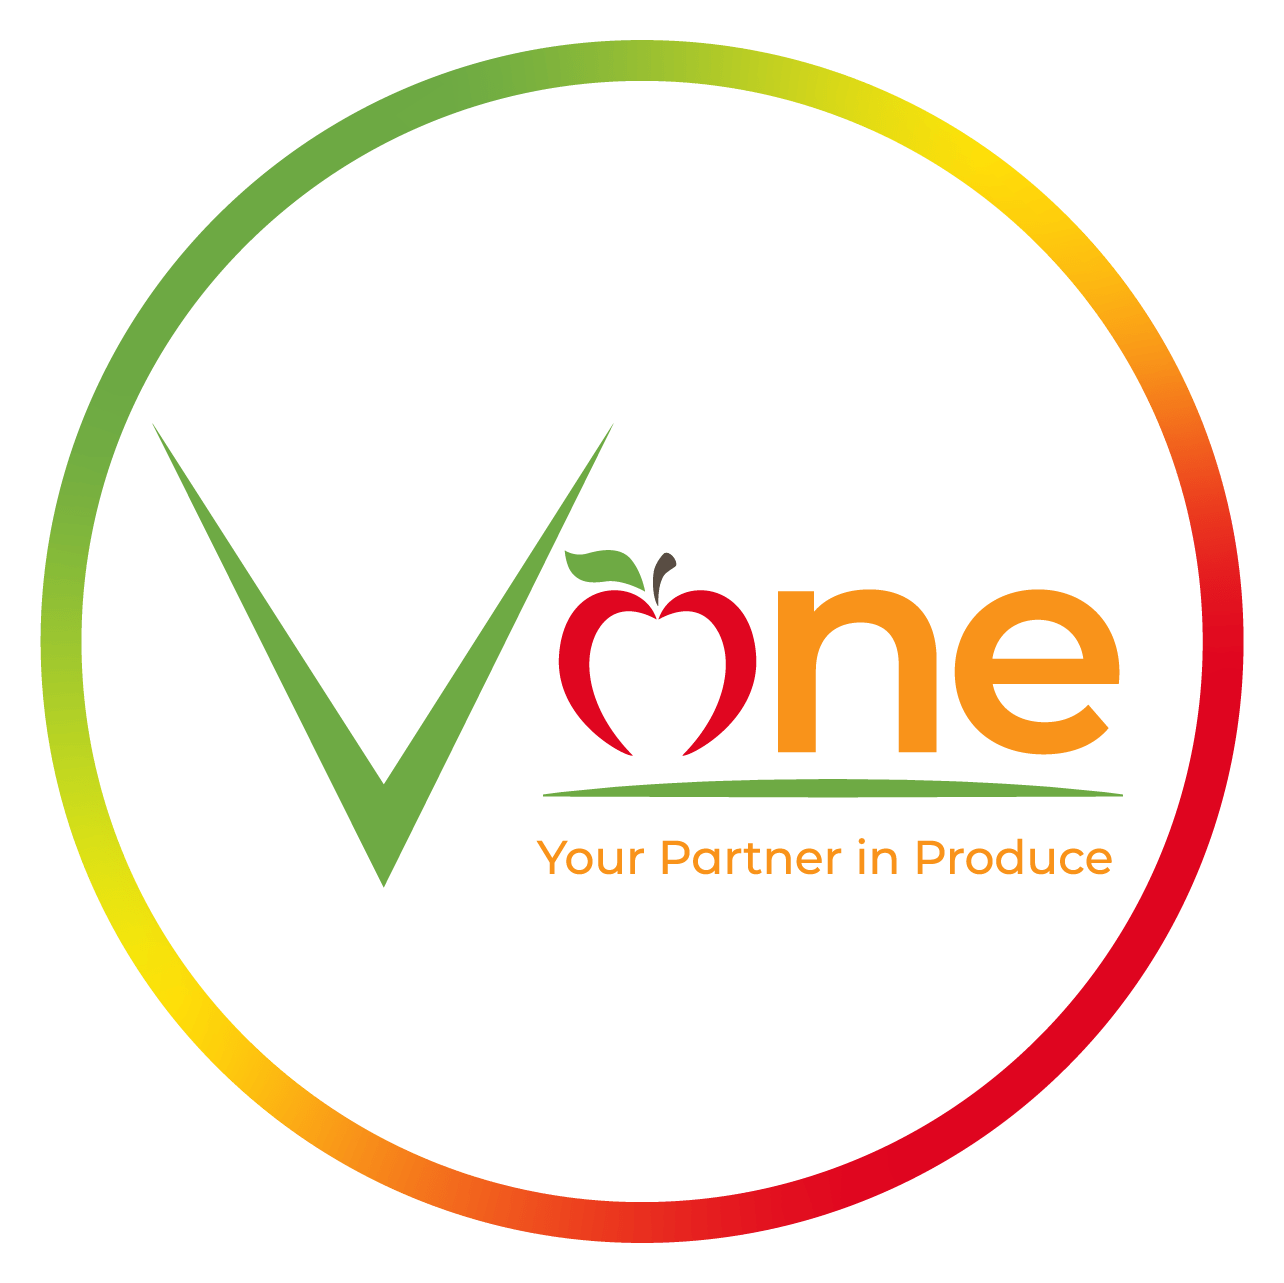 V One main logo